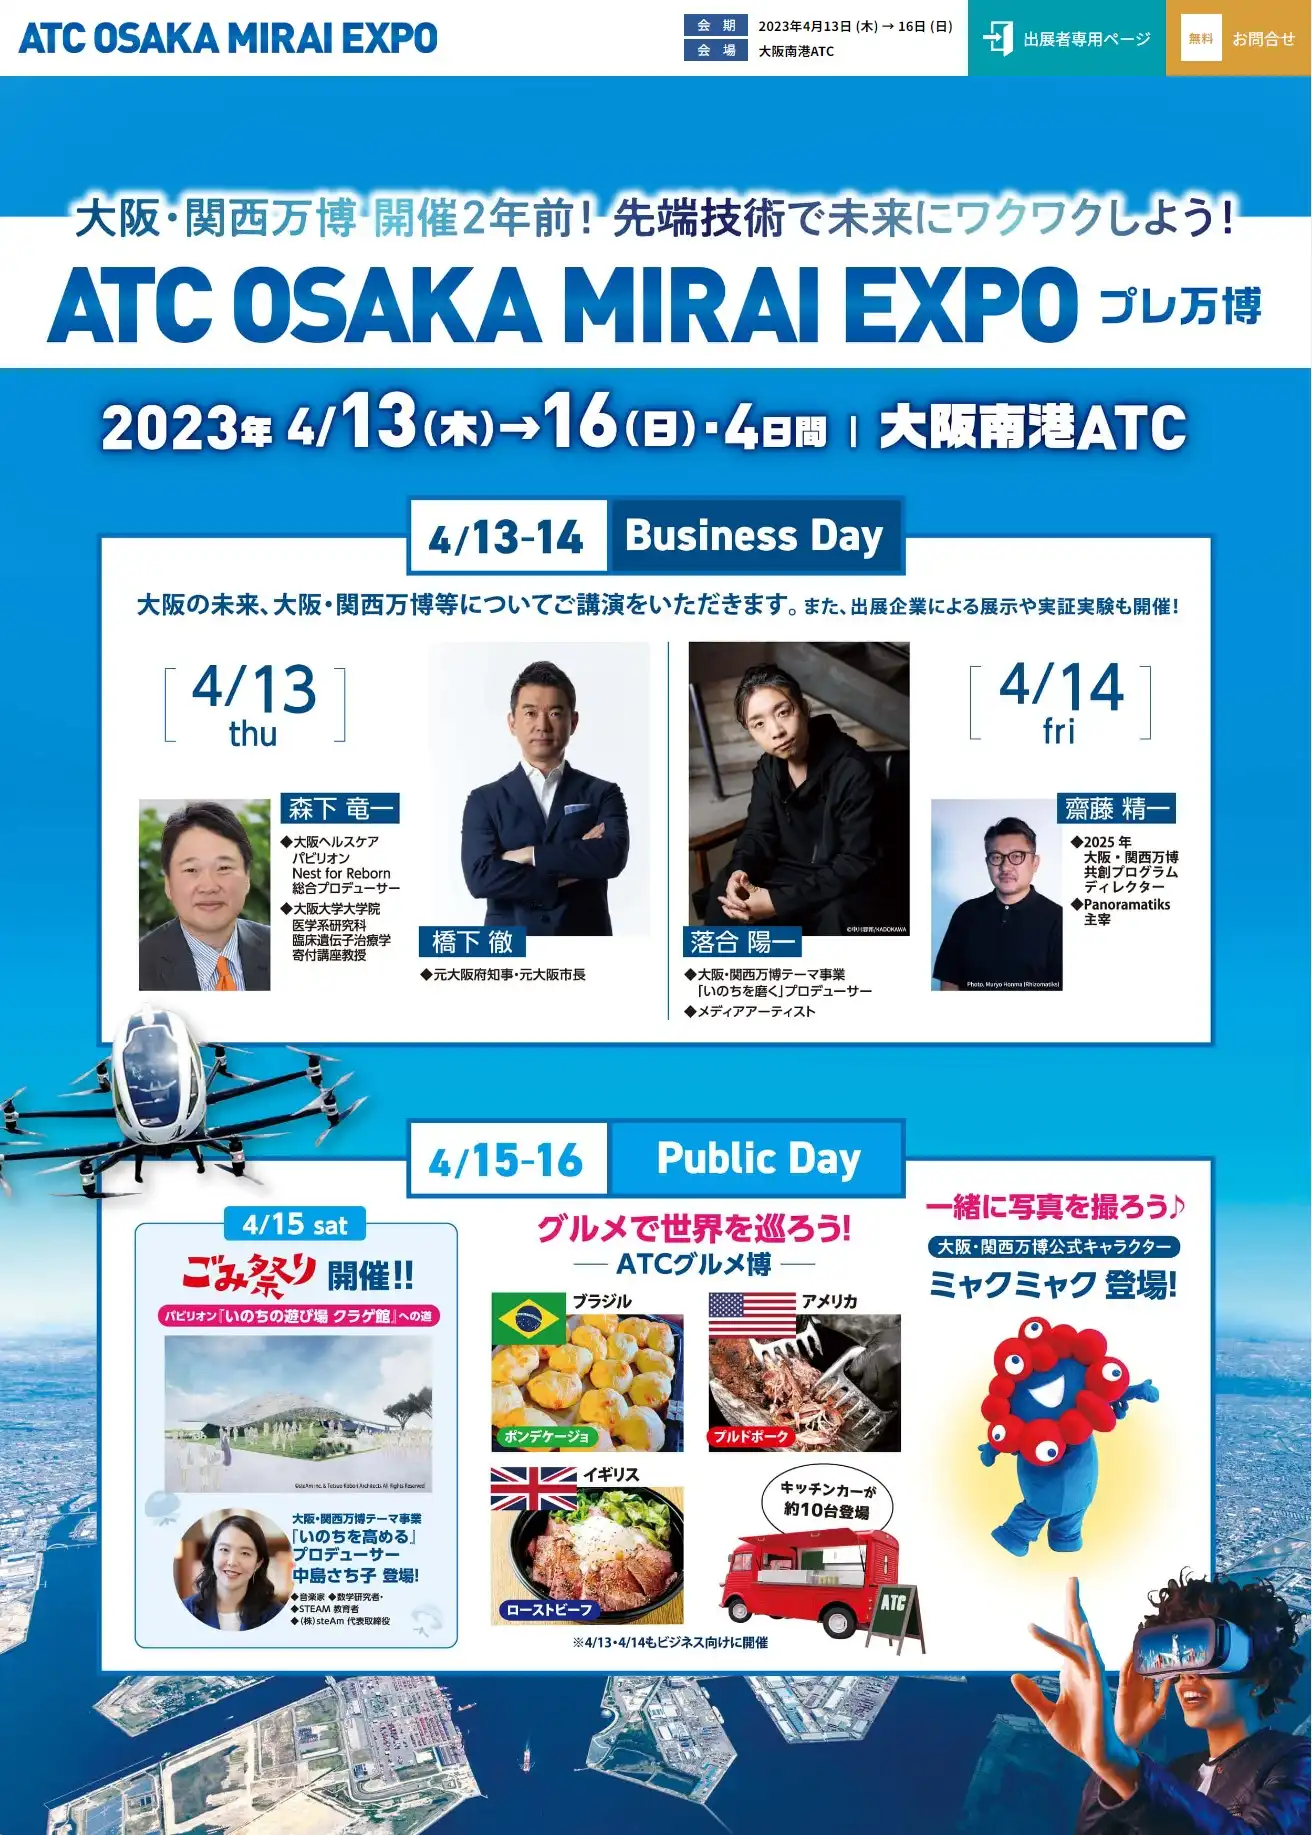 開催名：ATC OSAKA MIRAI EXPO

テーマ：これからの命のためにできること

内　容：大阪・関西万博に向け、万博をテーマにしたイベントの開催（SDGｓを解決するための、新たなイノベーション展示会）